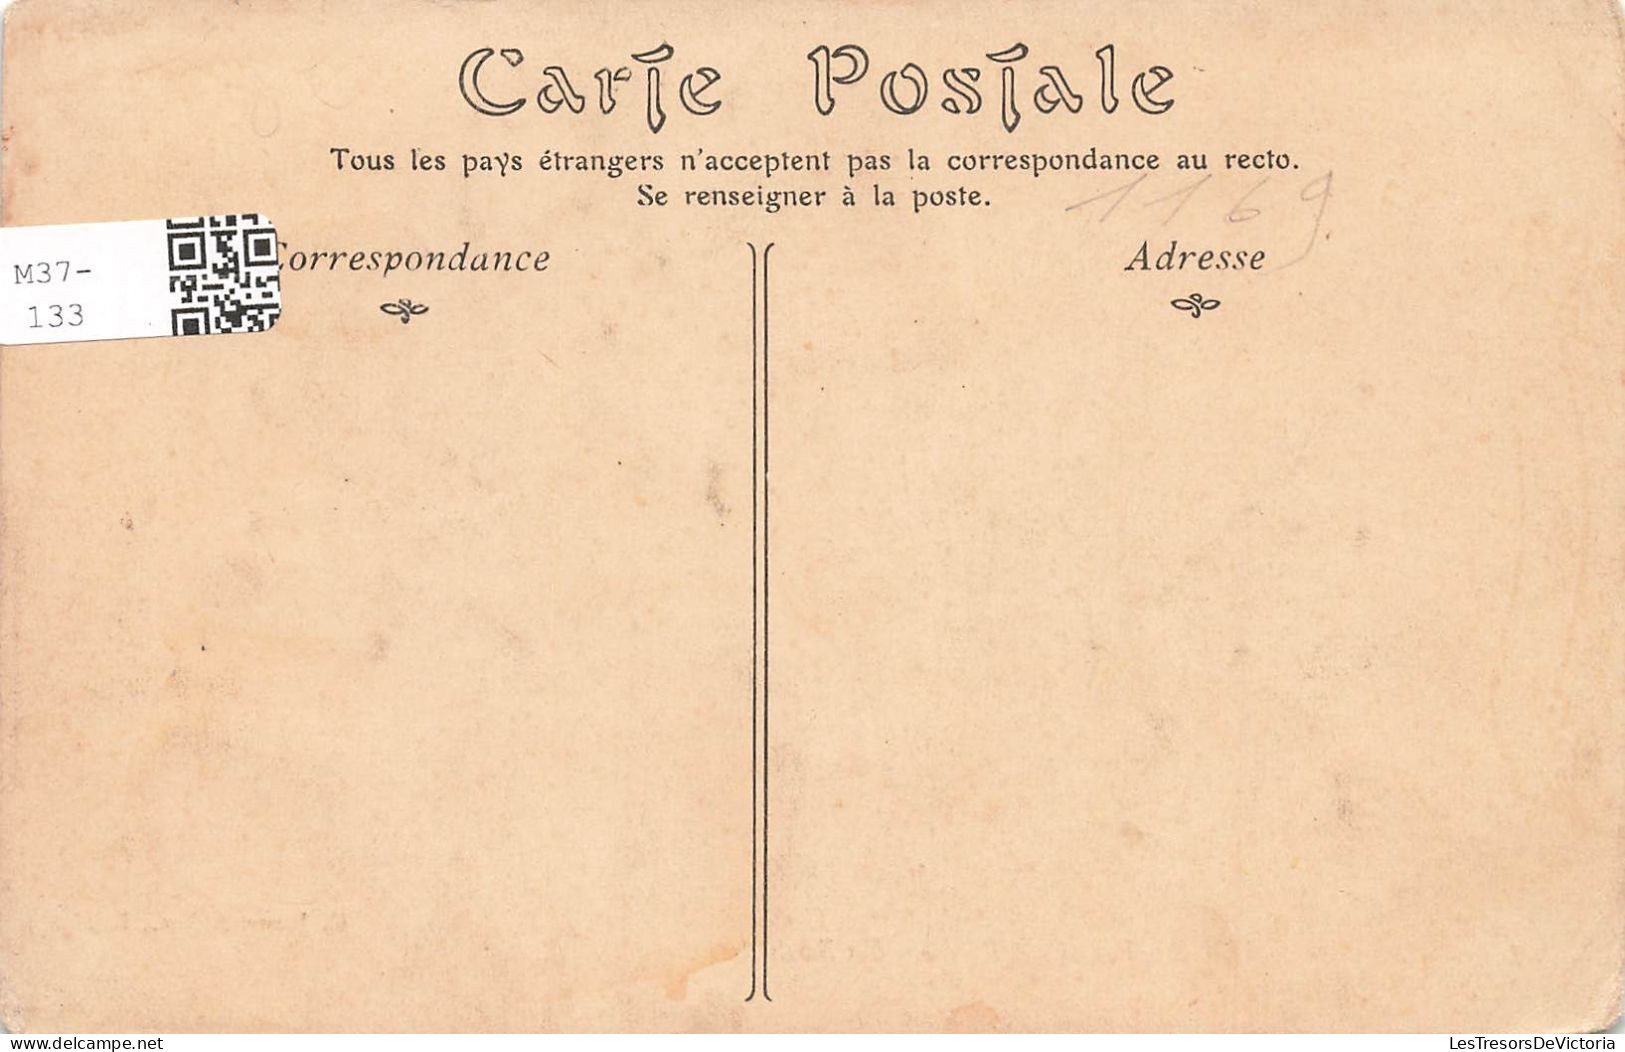 FRANCE - Thury Harcourt - Les Bords De L'Orne - Carte Postale Ancienne - Thury Harcourt